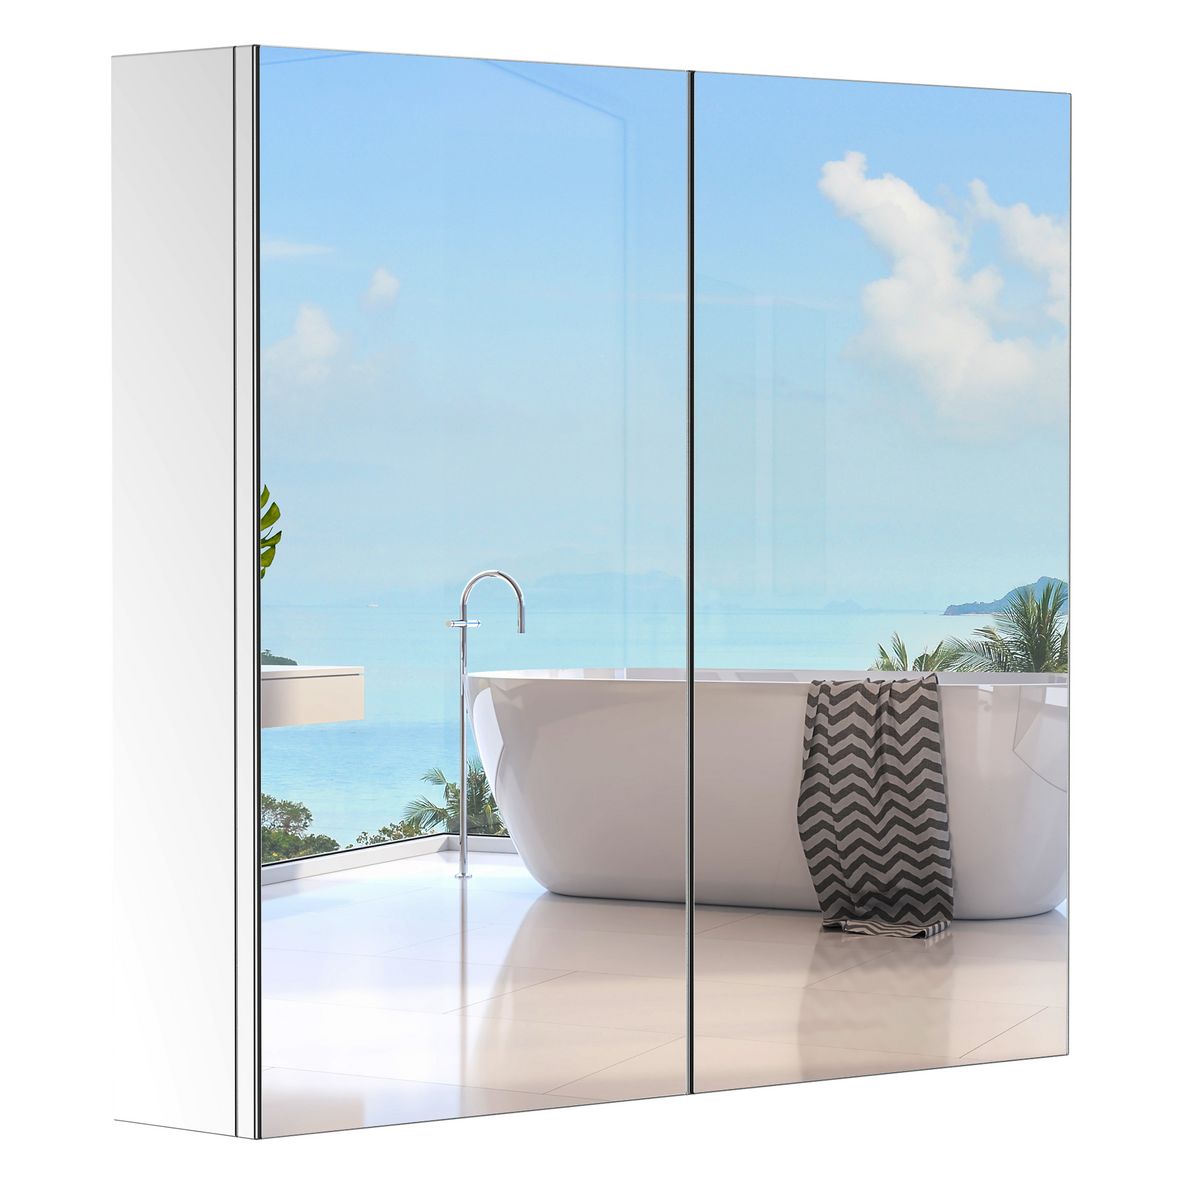 Ideal Enterprises Petit miroir d'angle de salle de bain en acier inoxydable